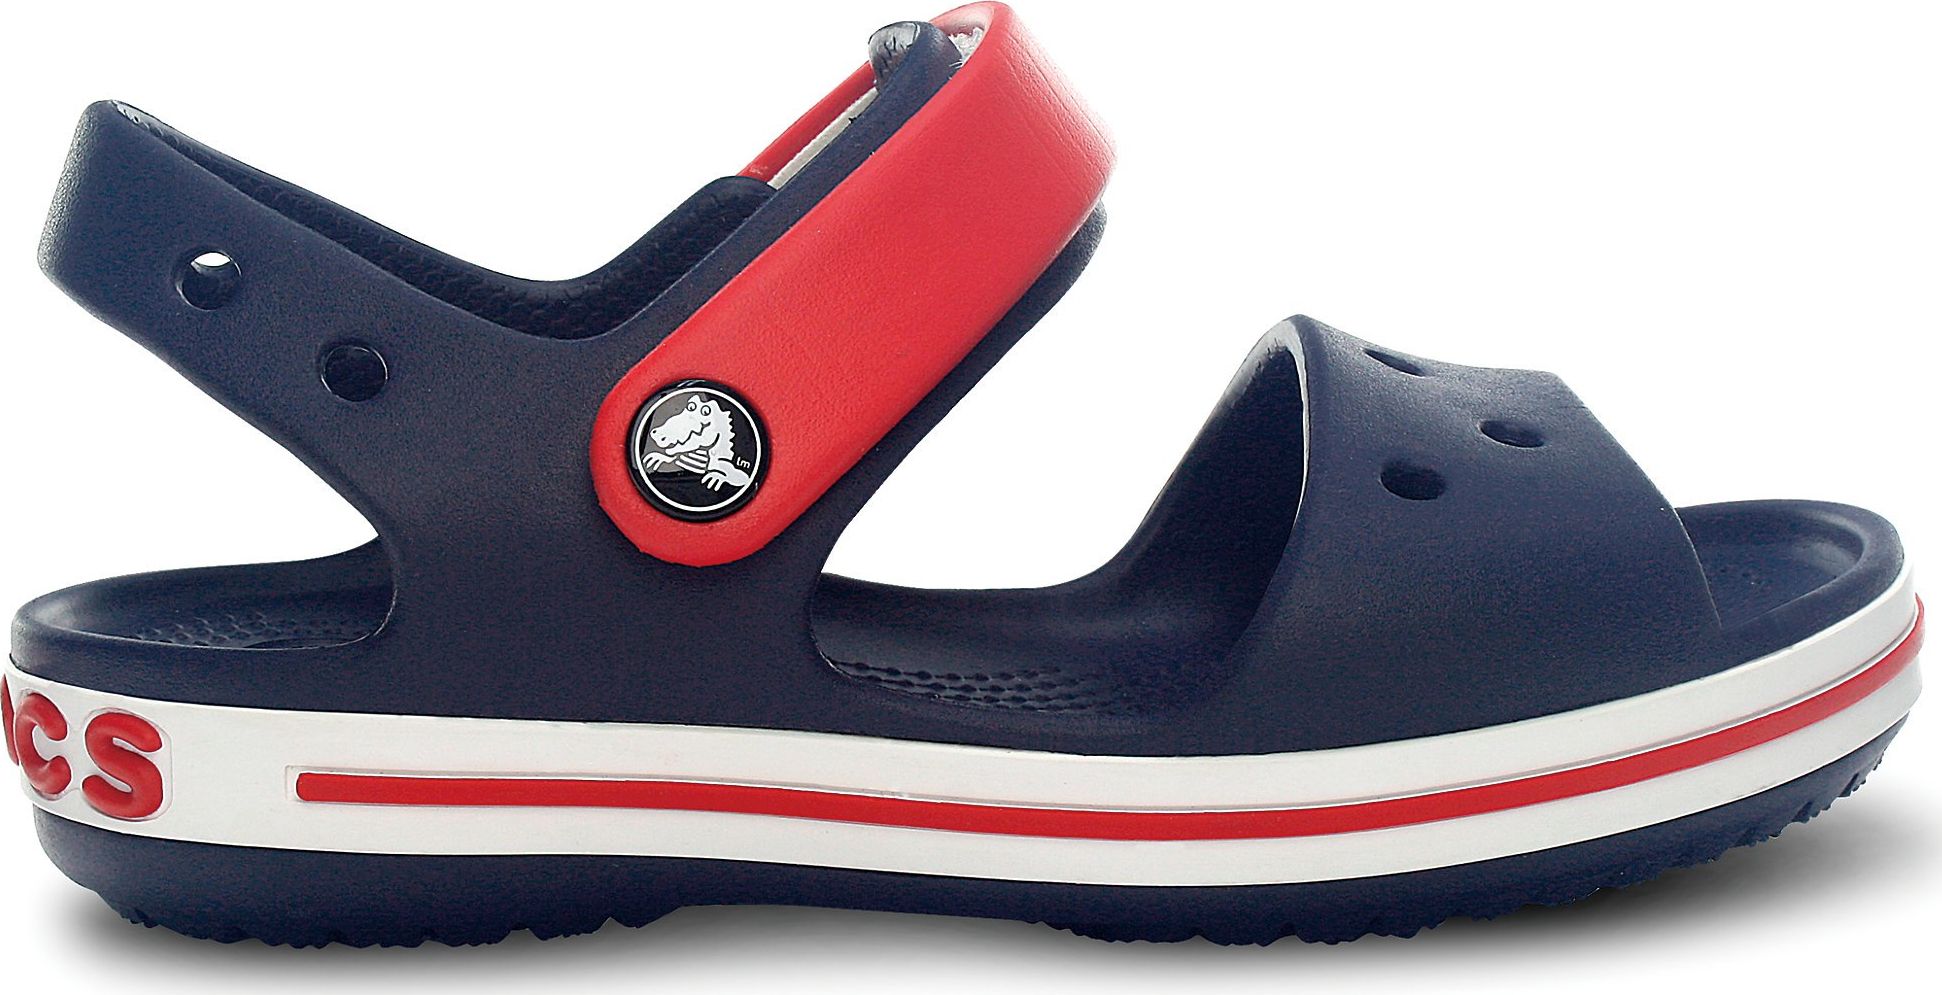 Sandalete pentru copii Crocband Navy / Red y. 28 (12856)